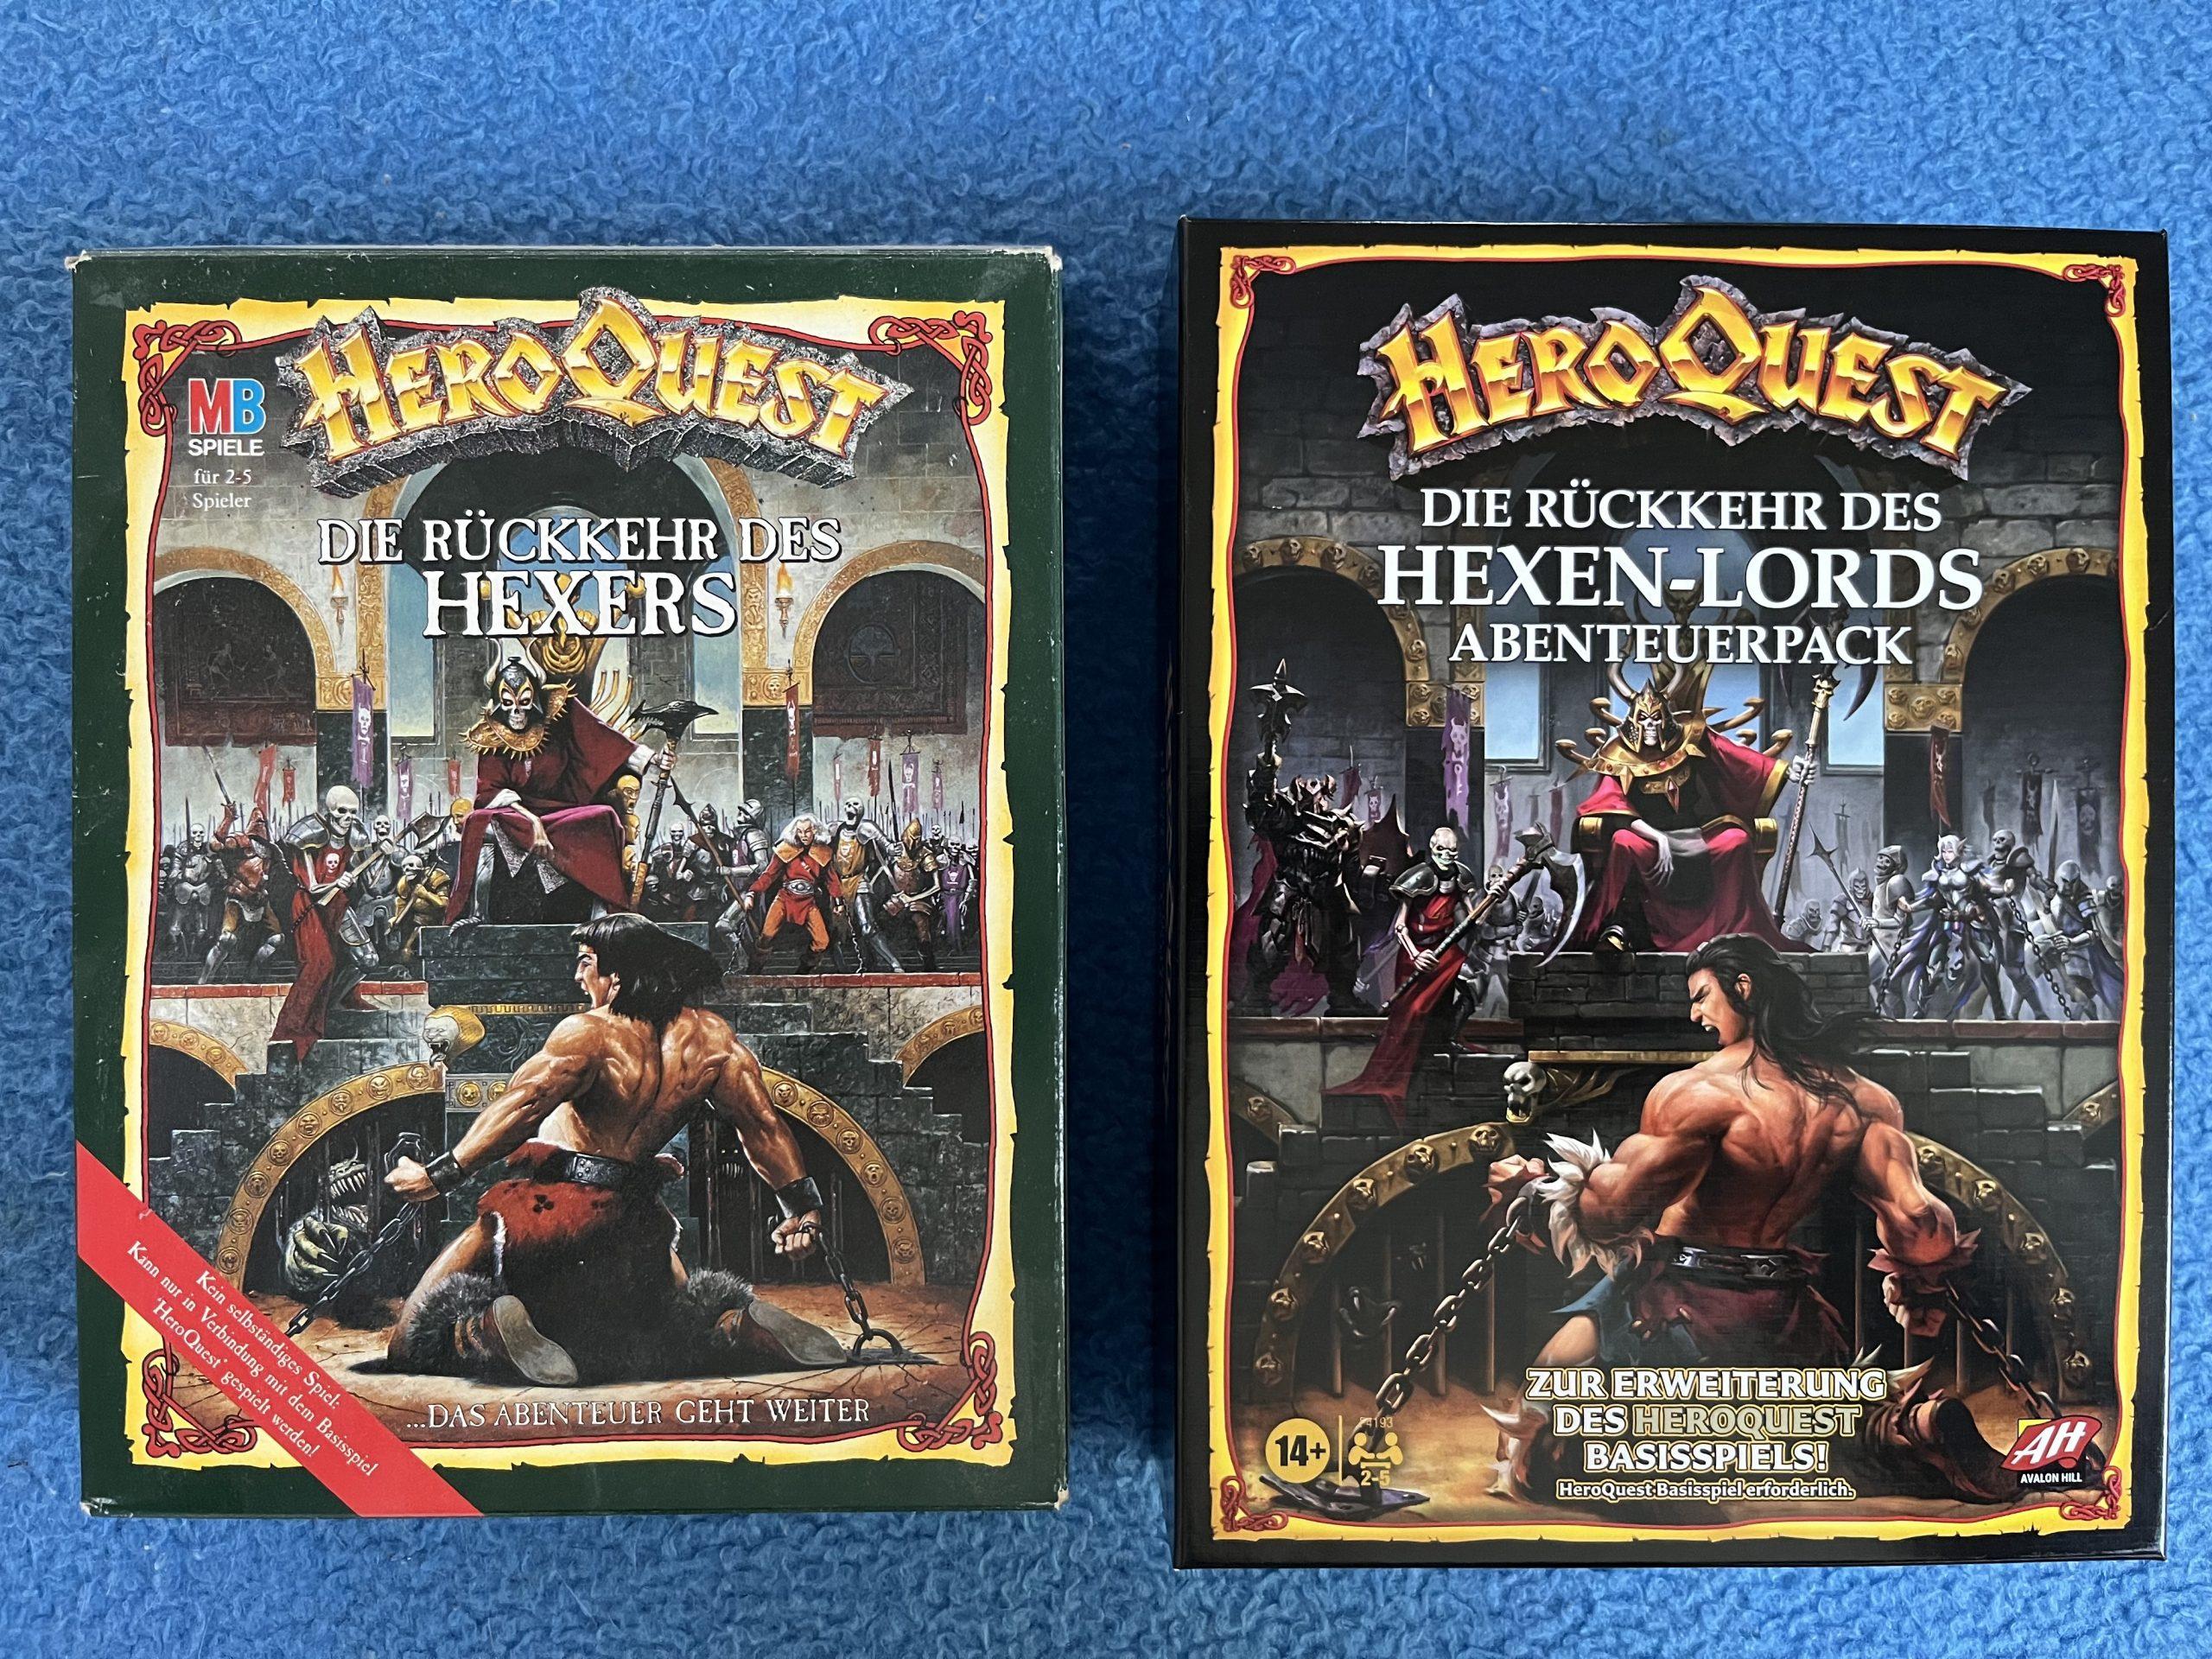 HeroQuest - Die Rückkerh des Hexenlords - Vergleich